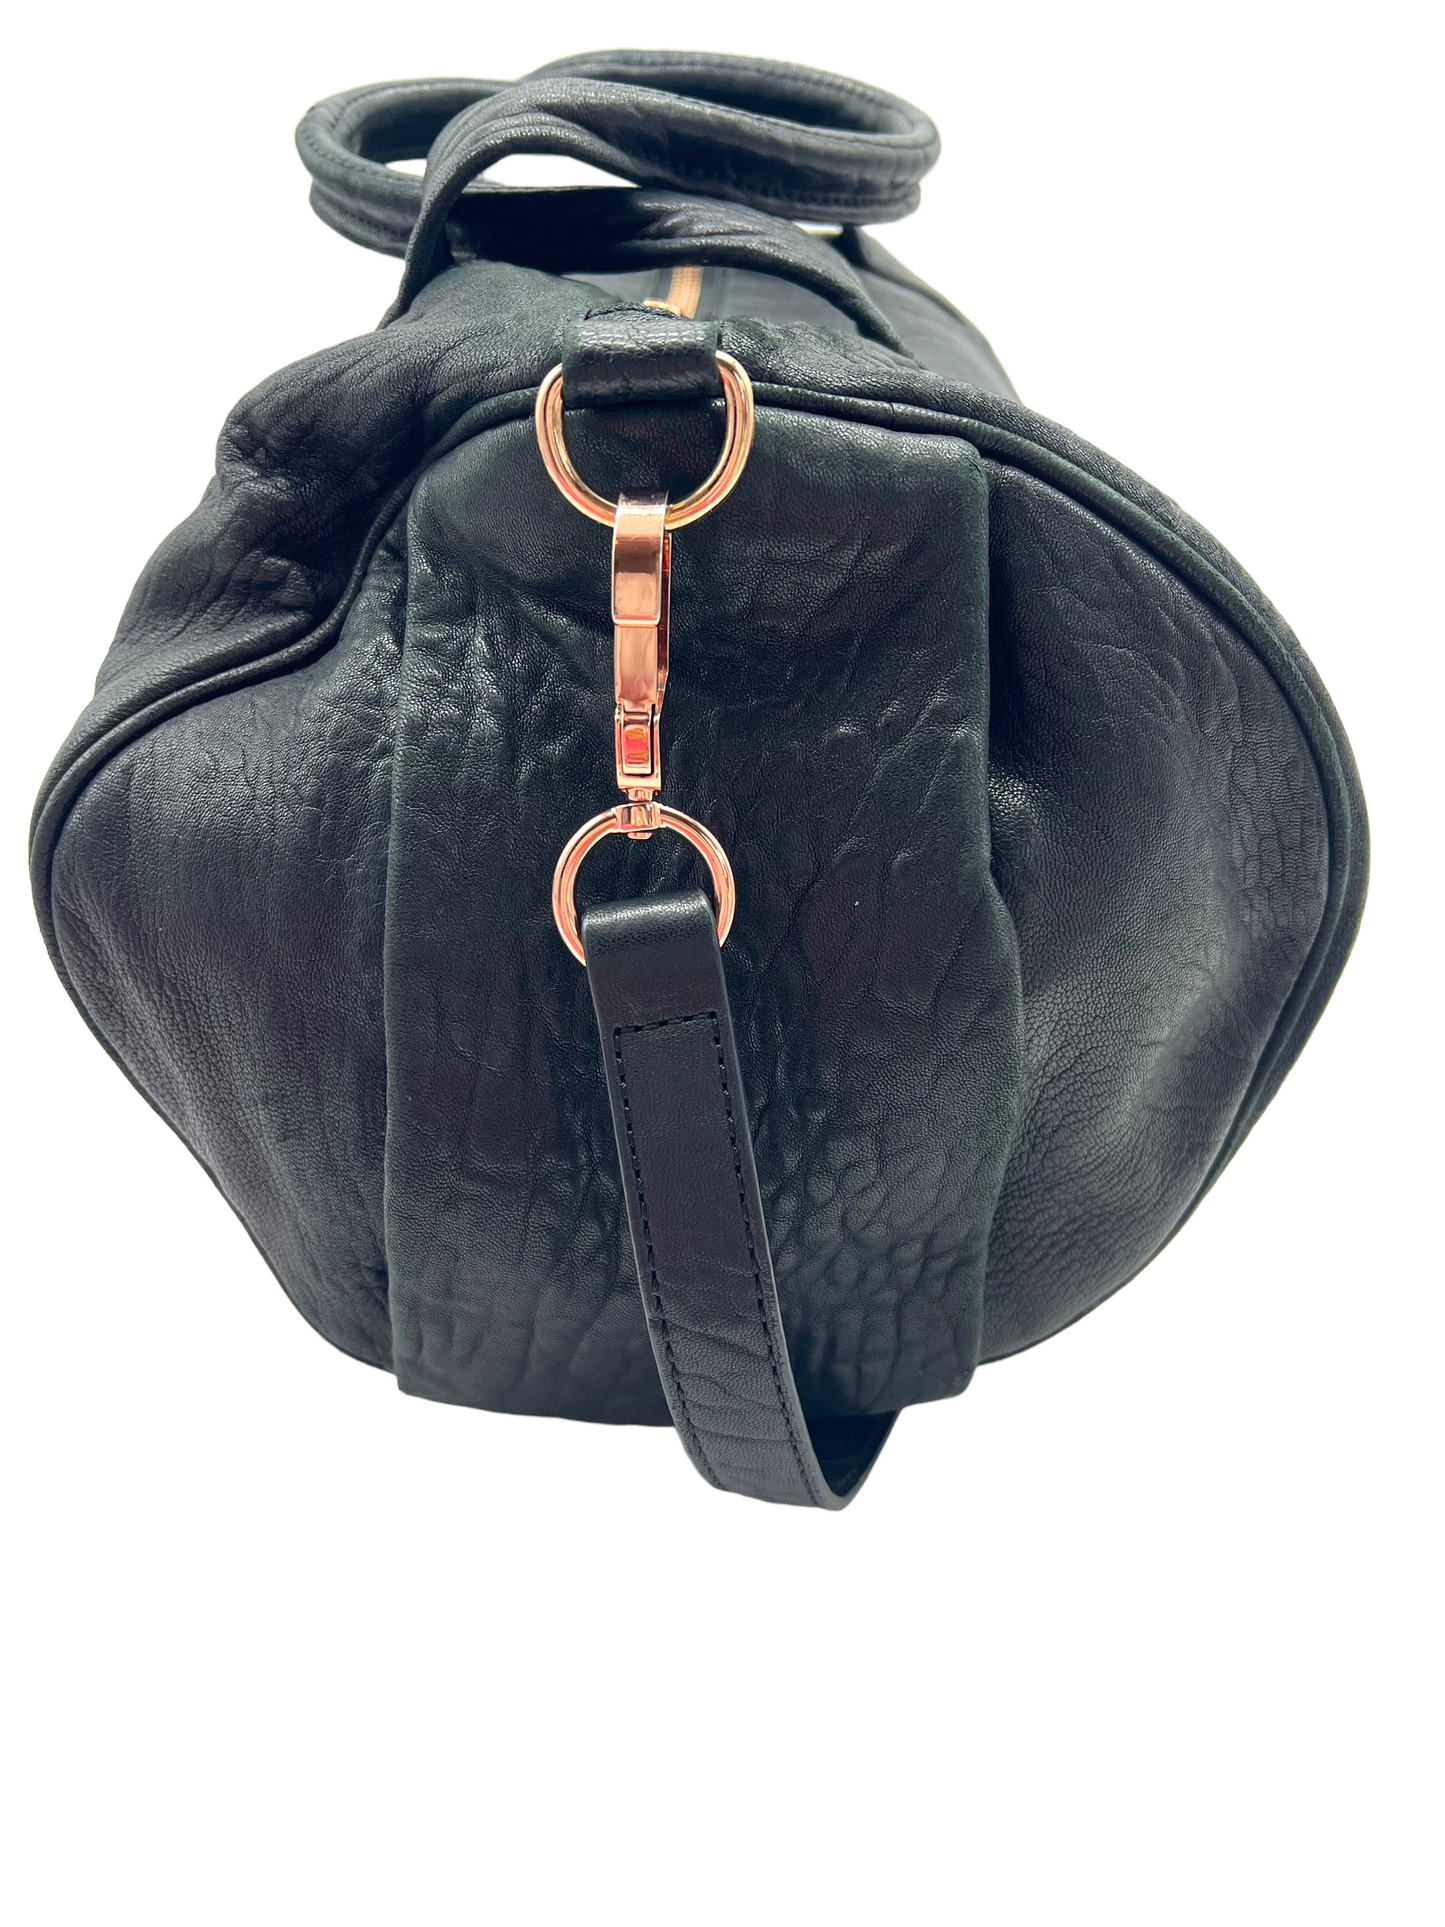 Alexander Wang Black Leather Rocco Handbag